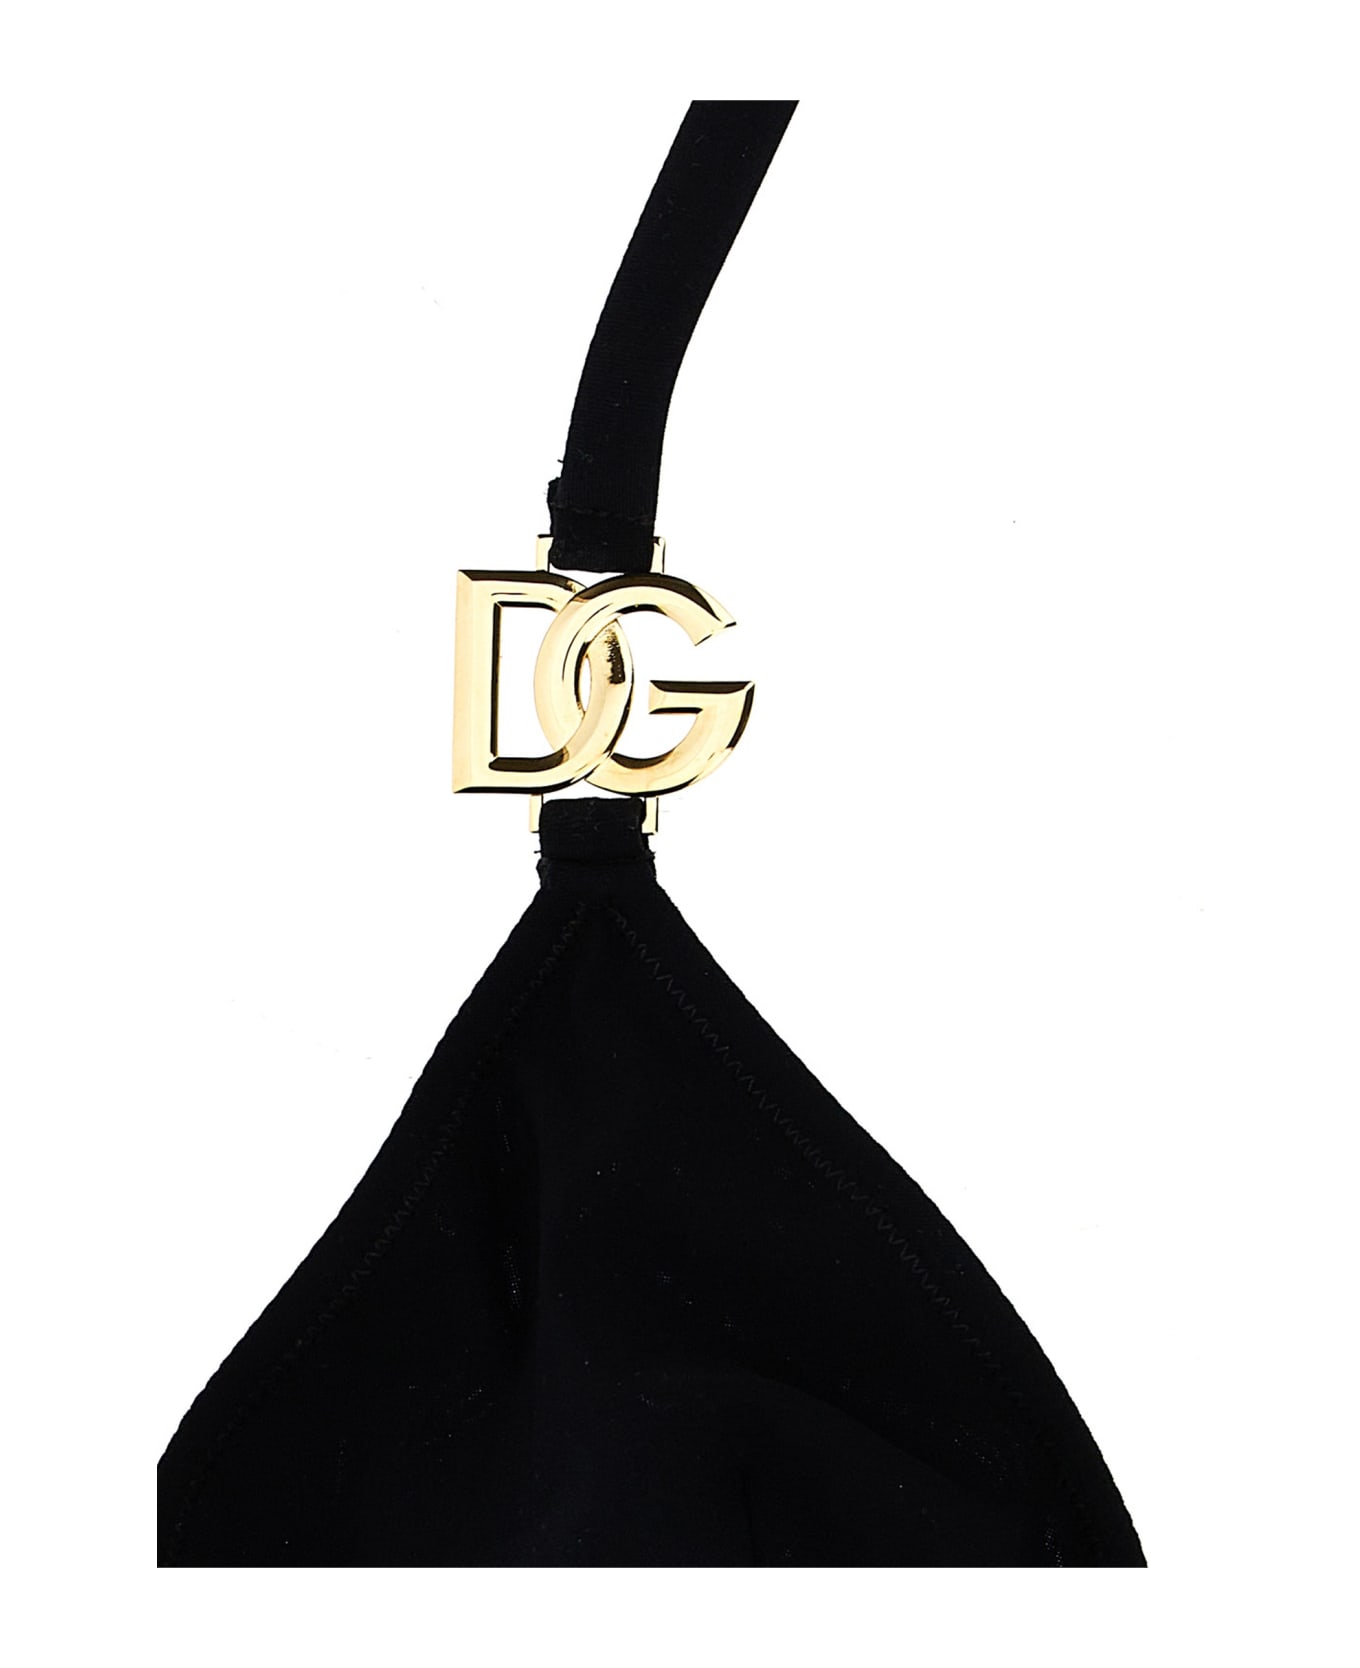 Dolce & Gabbana Logo Bikini Set - Black  